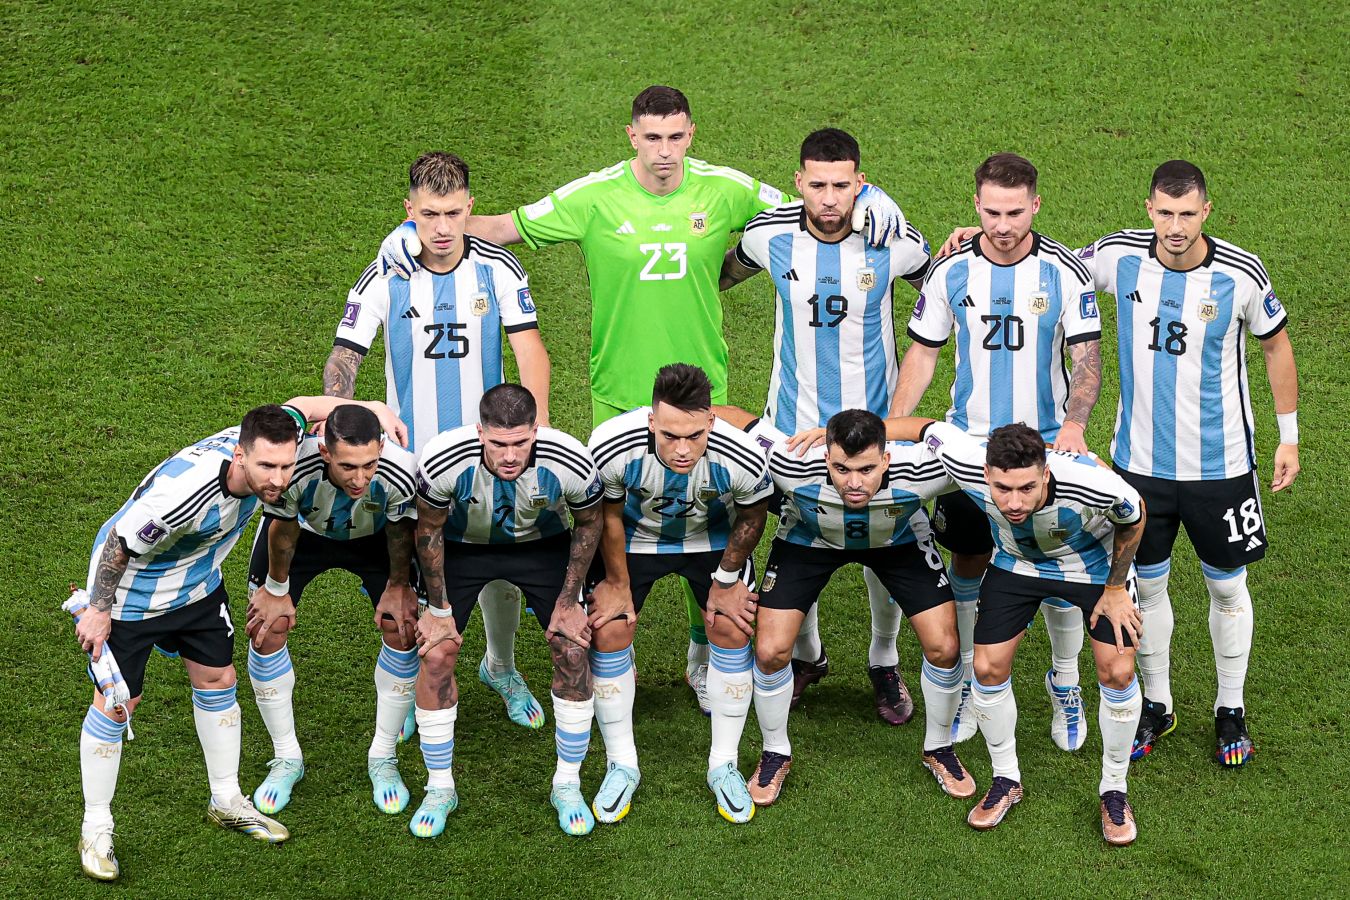 Игроки Аргентины после победы над Мексикой спели песню, в которой упомянули Бразилию